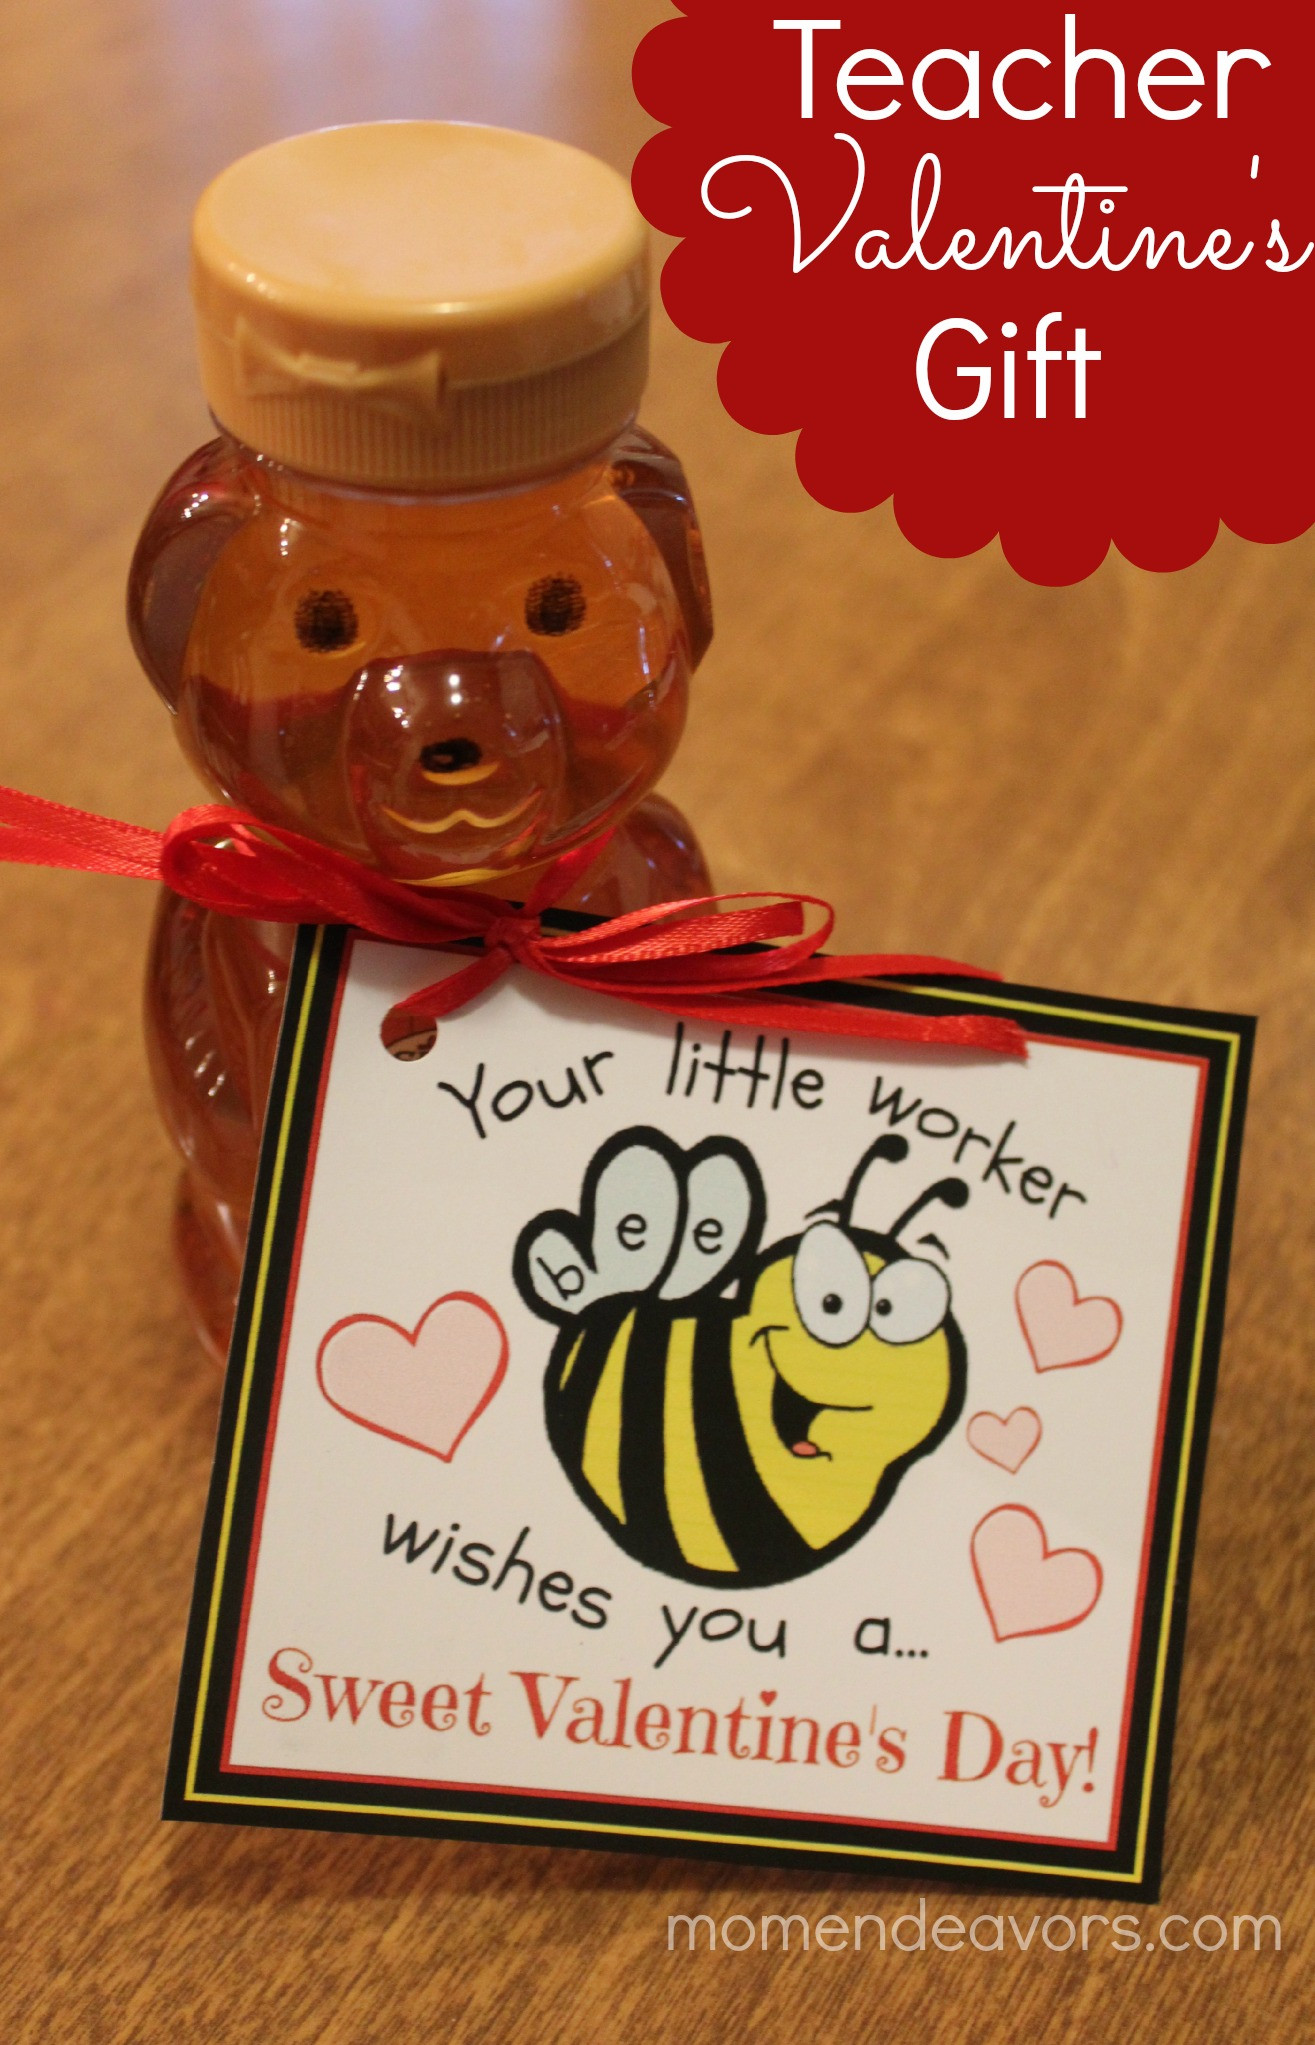 Valentine Gift Ideas For Teacher
 Bee themed Teacher Valentine’s Gift